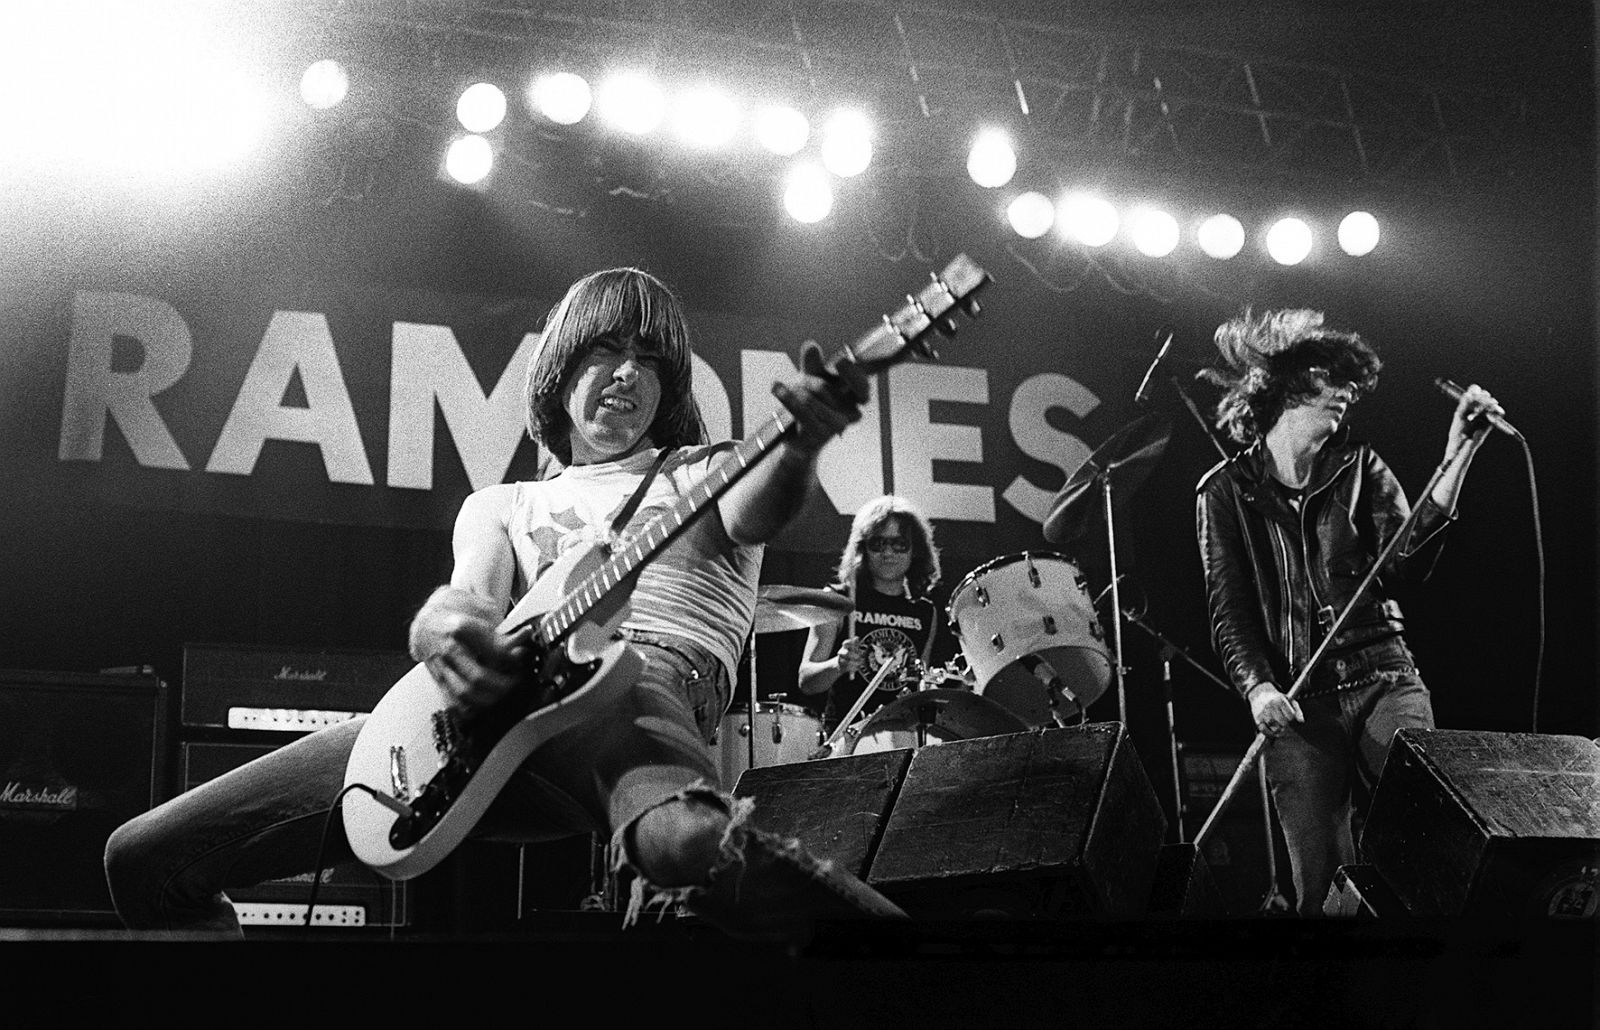 Los años setenta supusieron en Estados Unidos una década de gran diversidad cultural, en la que surgieron grupos musicales como The Sex Pistols, Blondie o Ramones (en la imagen)